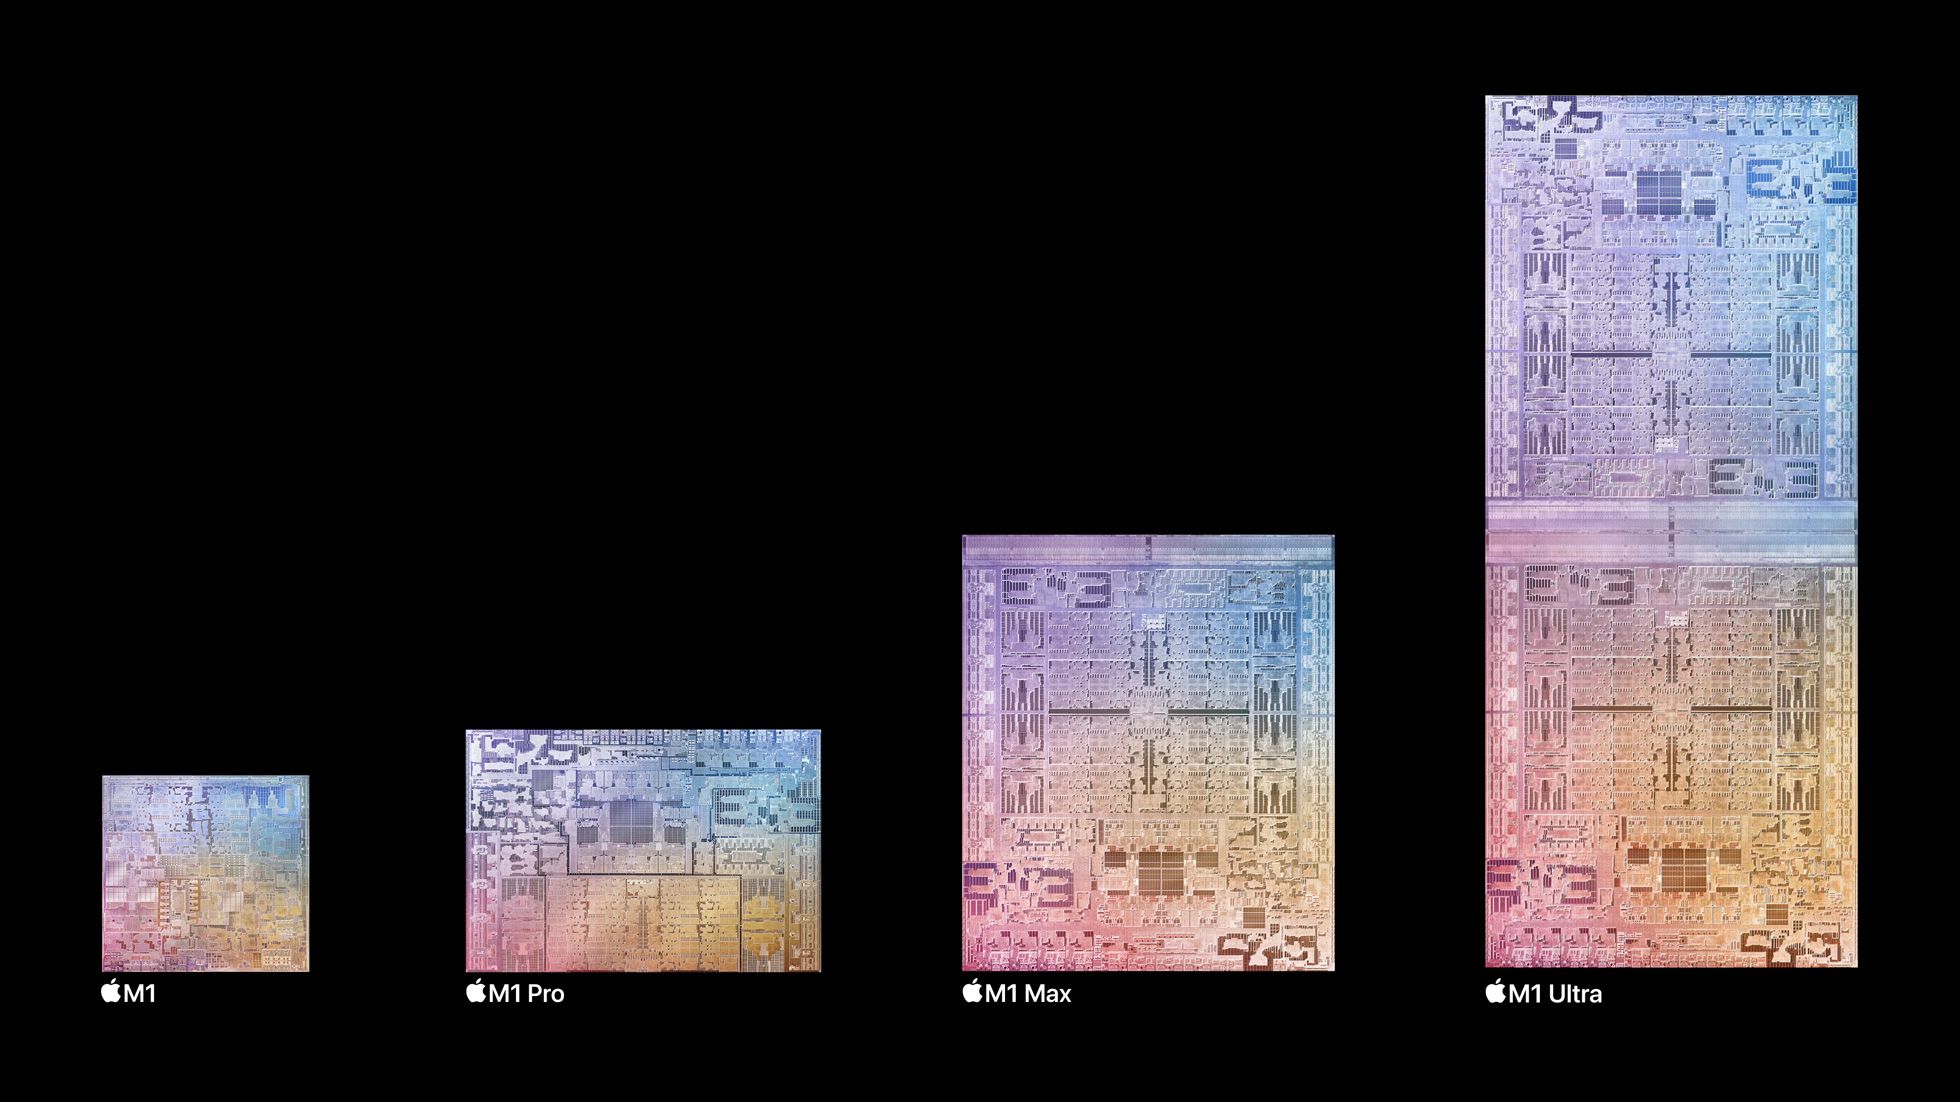 Perbandingan antara chipset M1, M1 Pro, M1 Max, dan M1 Ultra, di mana yang terakhir pada dasarnya adalah penggabungan dua chipset M1 Max.